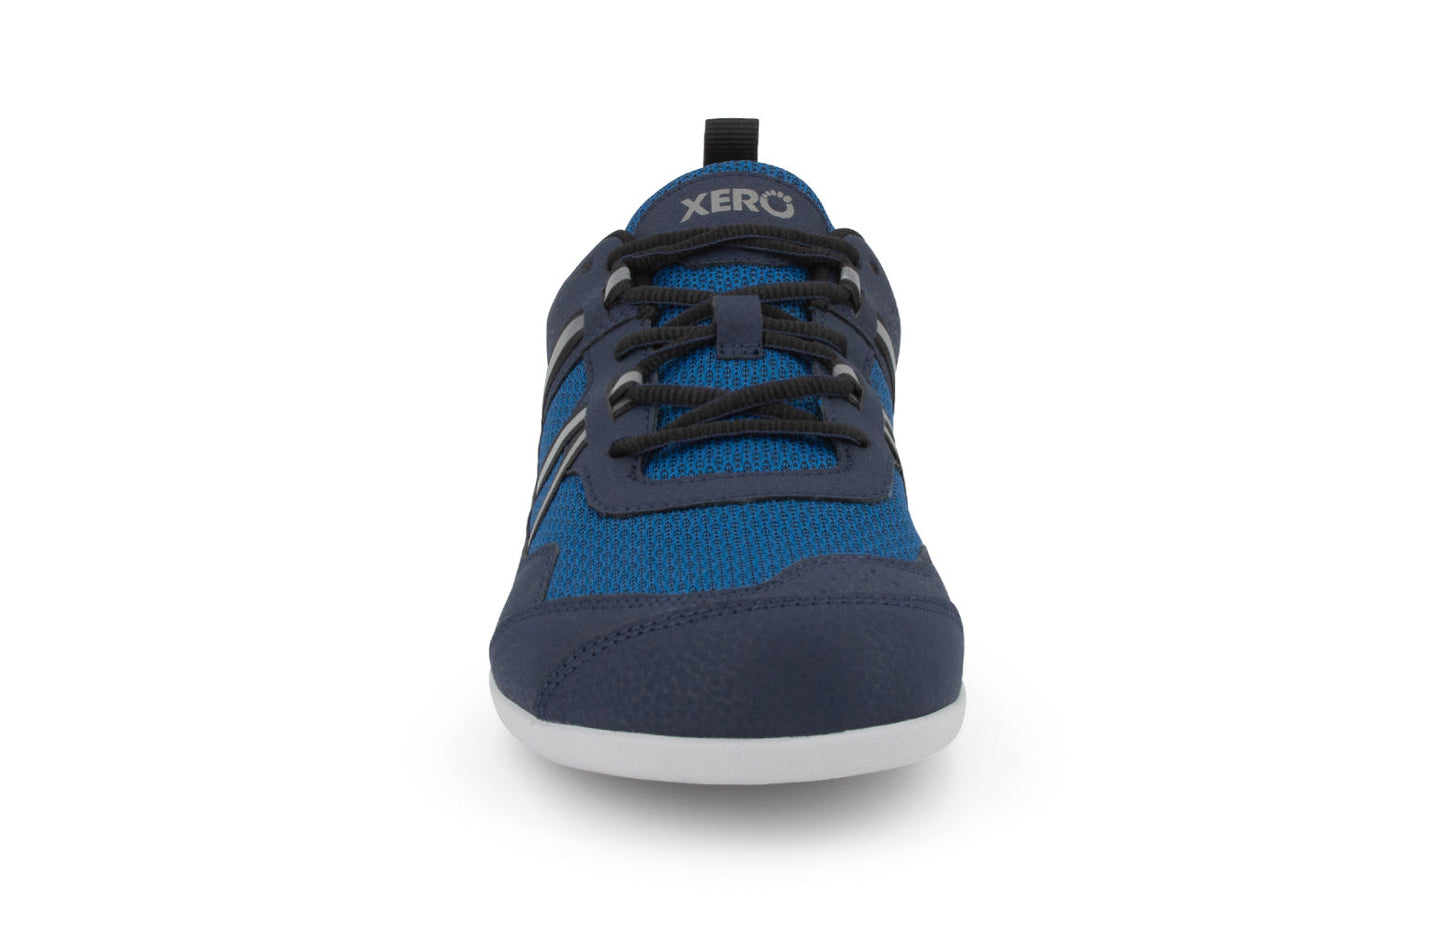 Xero Shoes Prio barfods løbesko/træningssko til mænd i farven mykonos blue, forfra